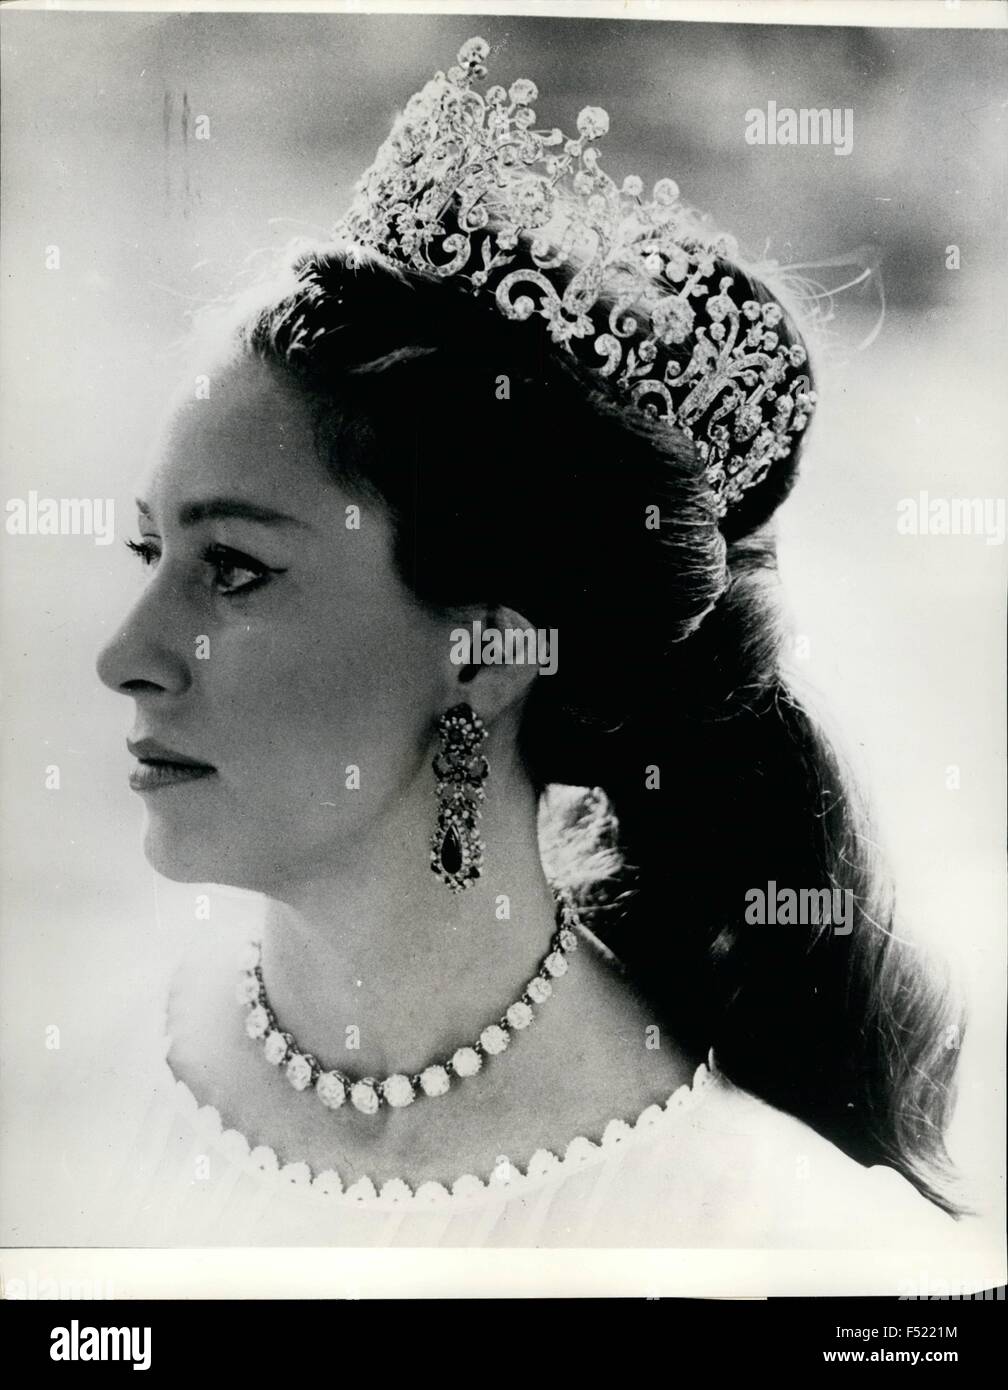 1952 - El Princess Margaret - por Lord Snowdon: Esta imagen, de Princess  Margaret, fue tomada por su marido, el conde de Snowdon, en el Palacio de  Kensington. Muestra la Princesa portando